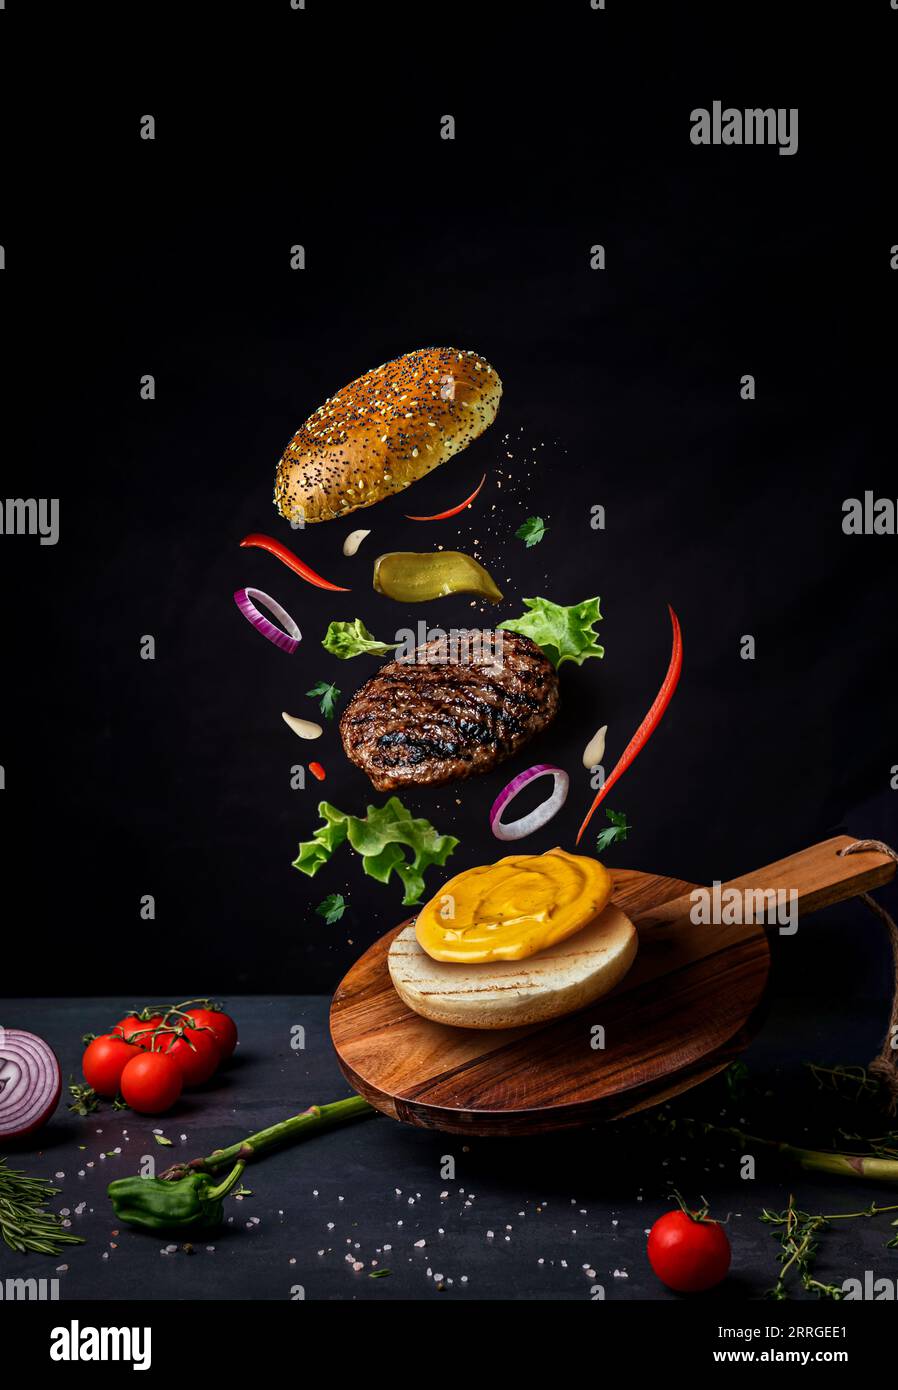 Burger avec des ingrédients volants sur le bois. Photographie culinaire Banque D'Images